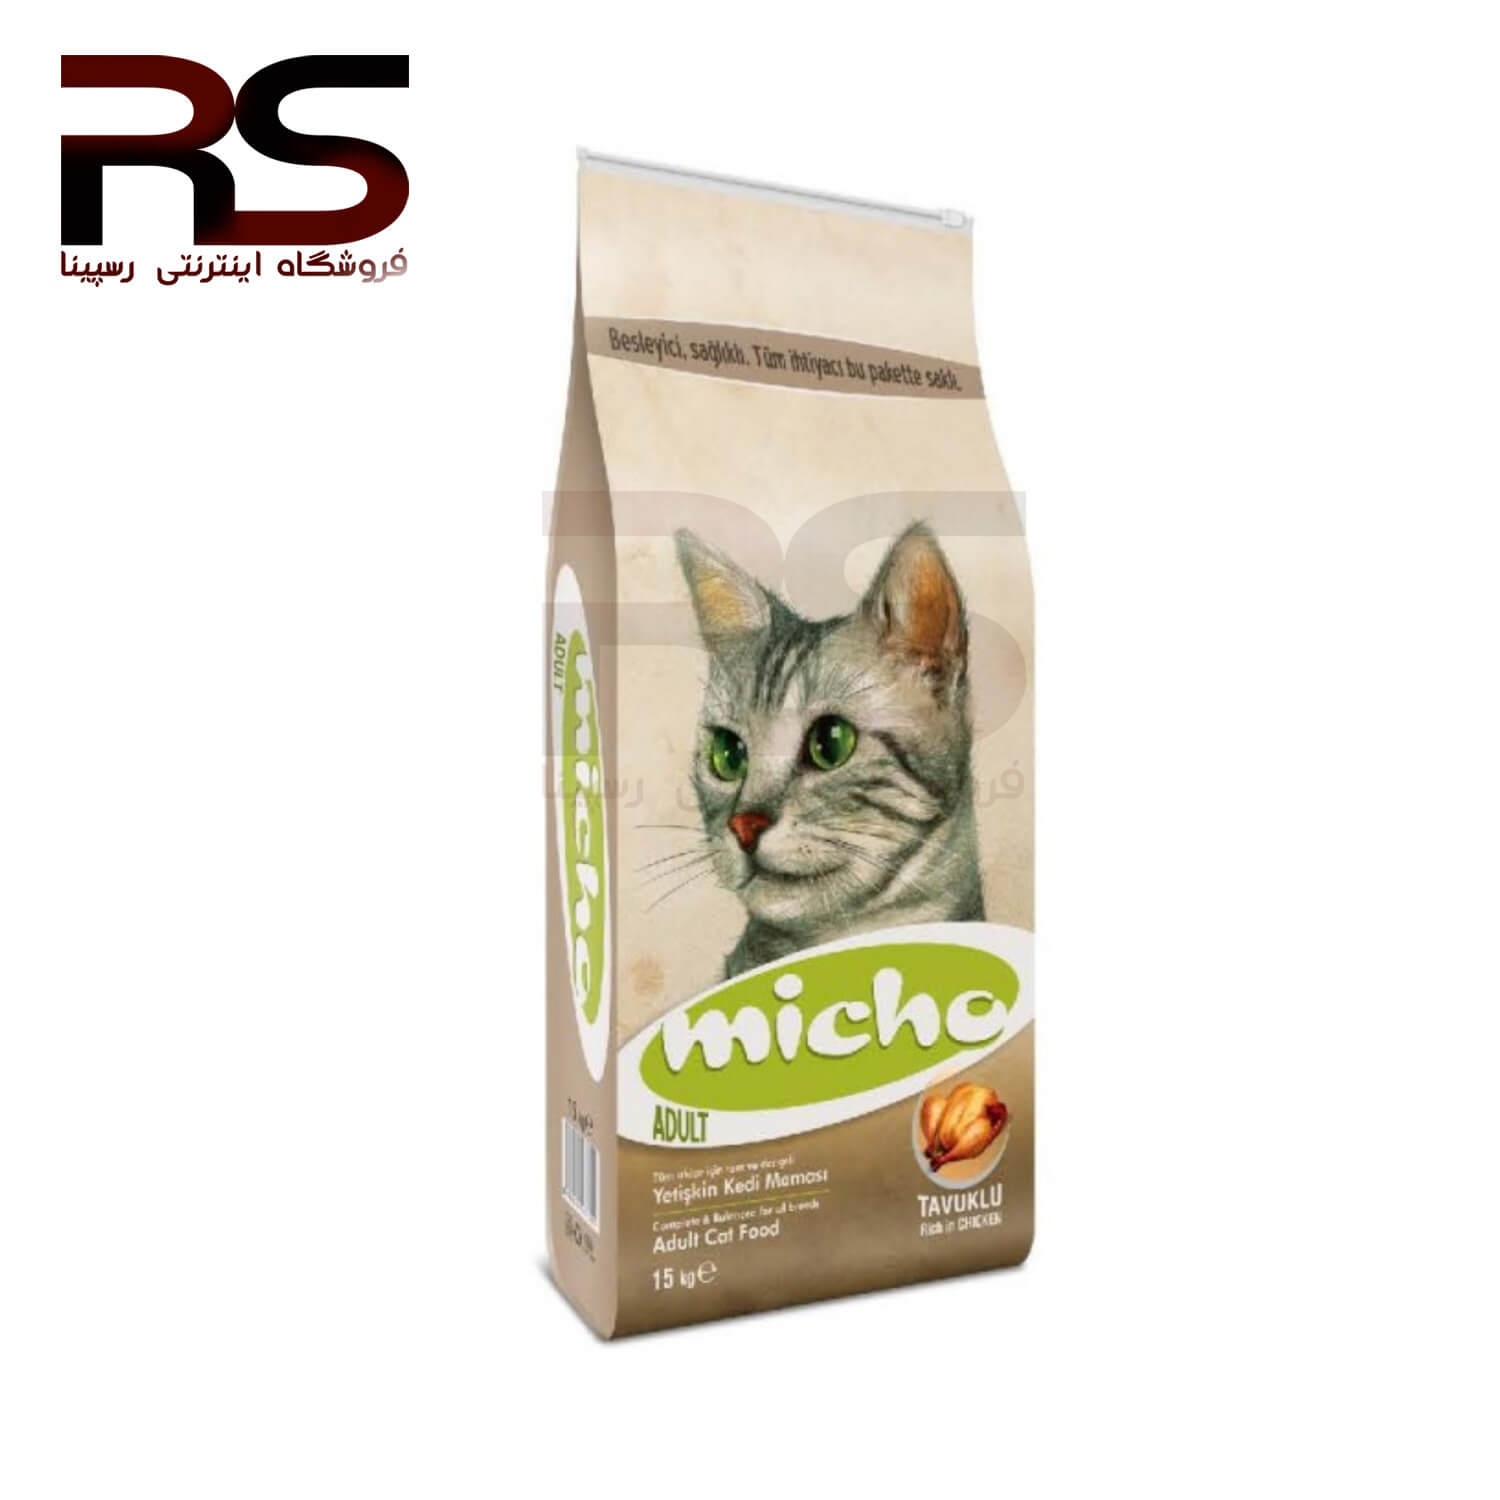 غذای خشک میچو Micho مخصوص گربه بالغ 15 کیلوگرم